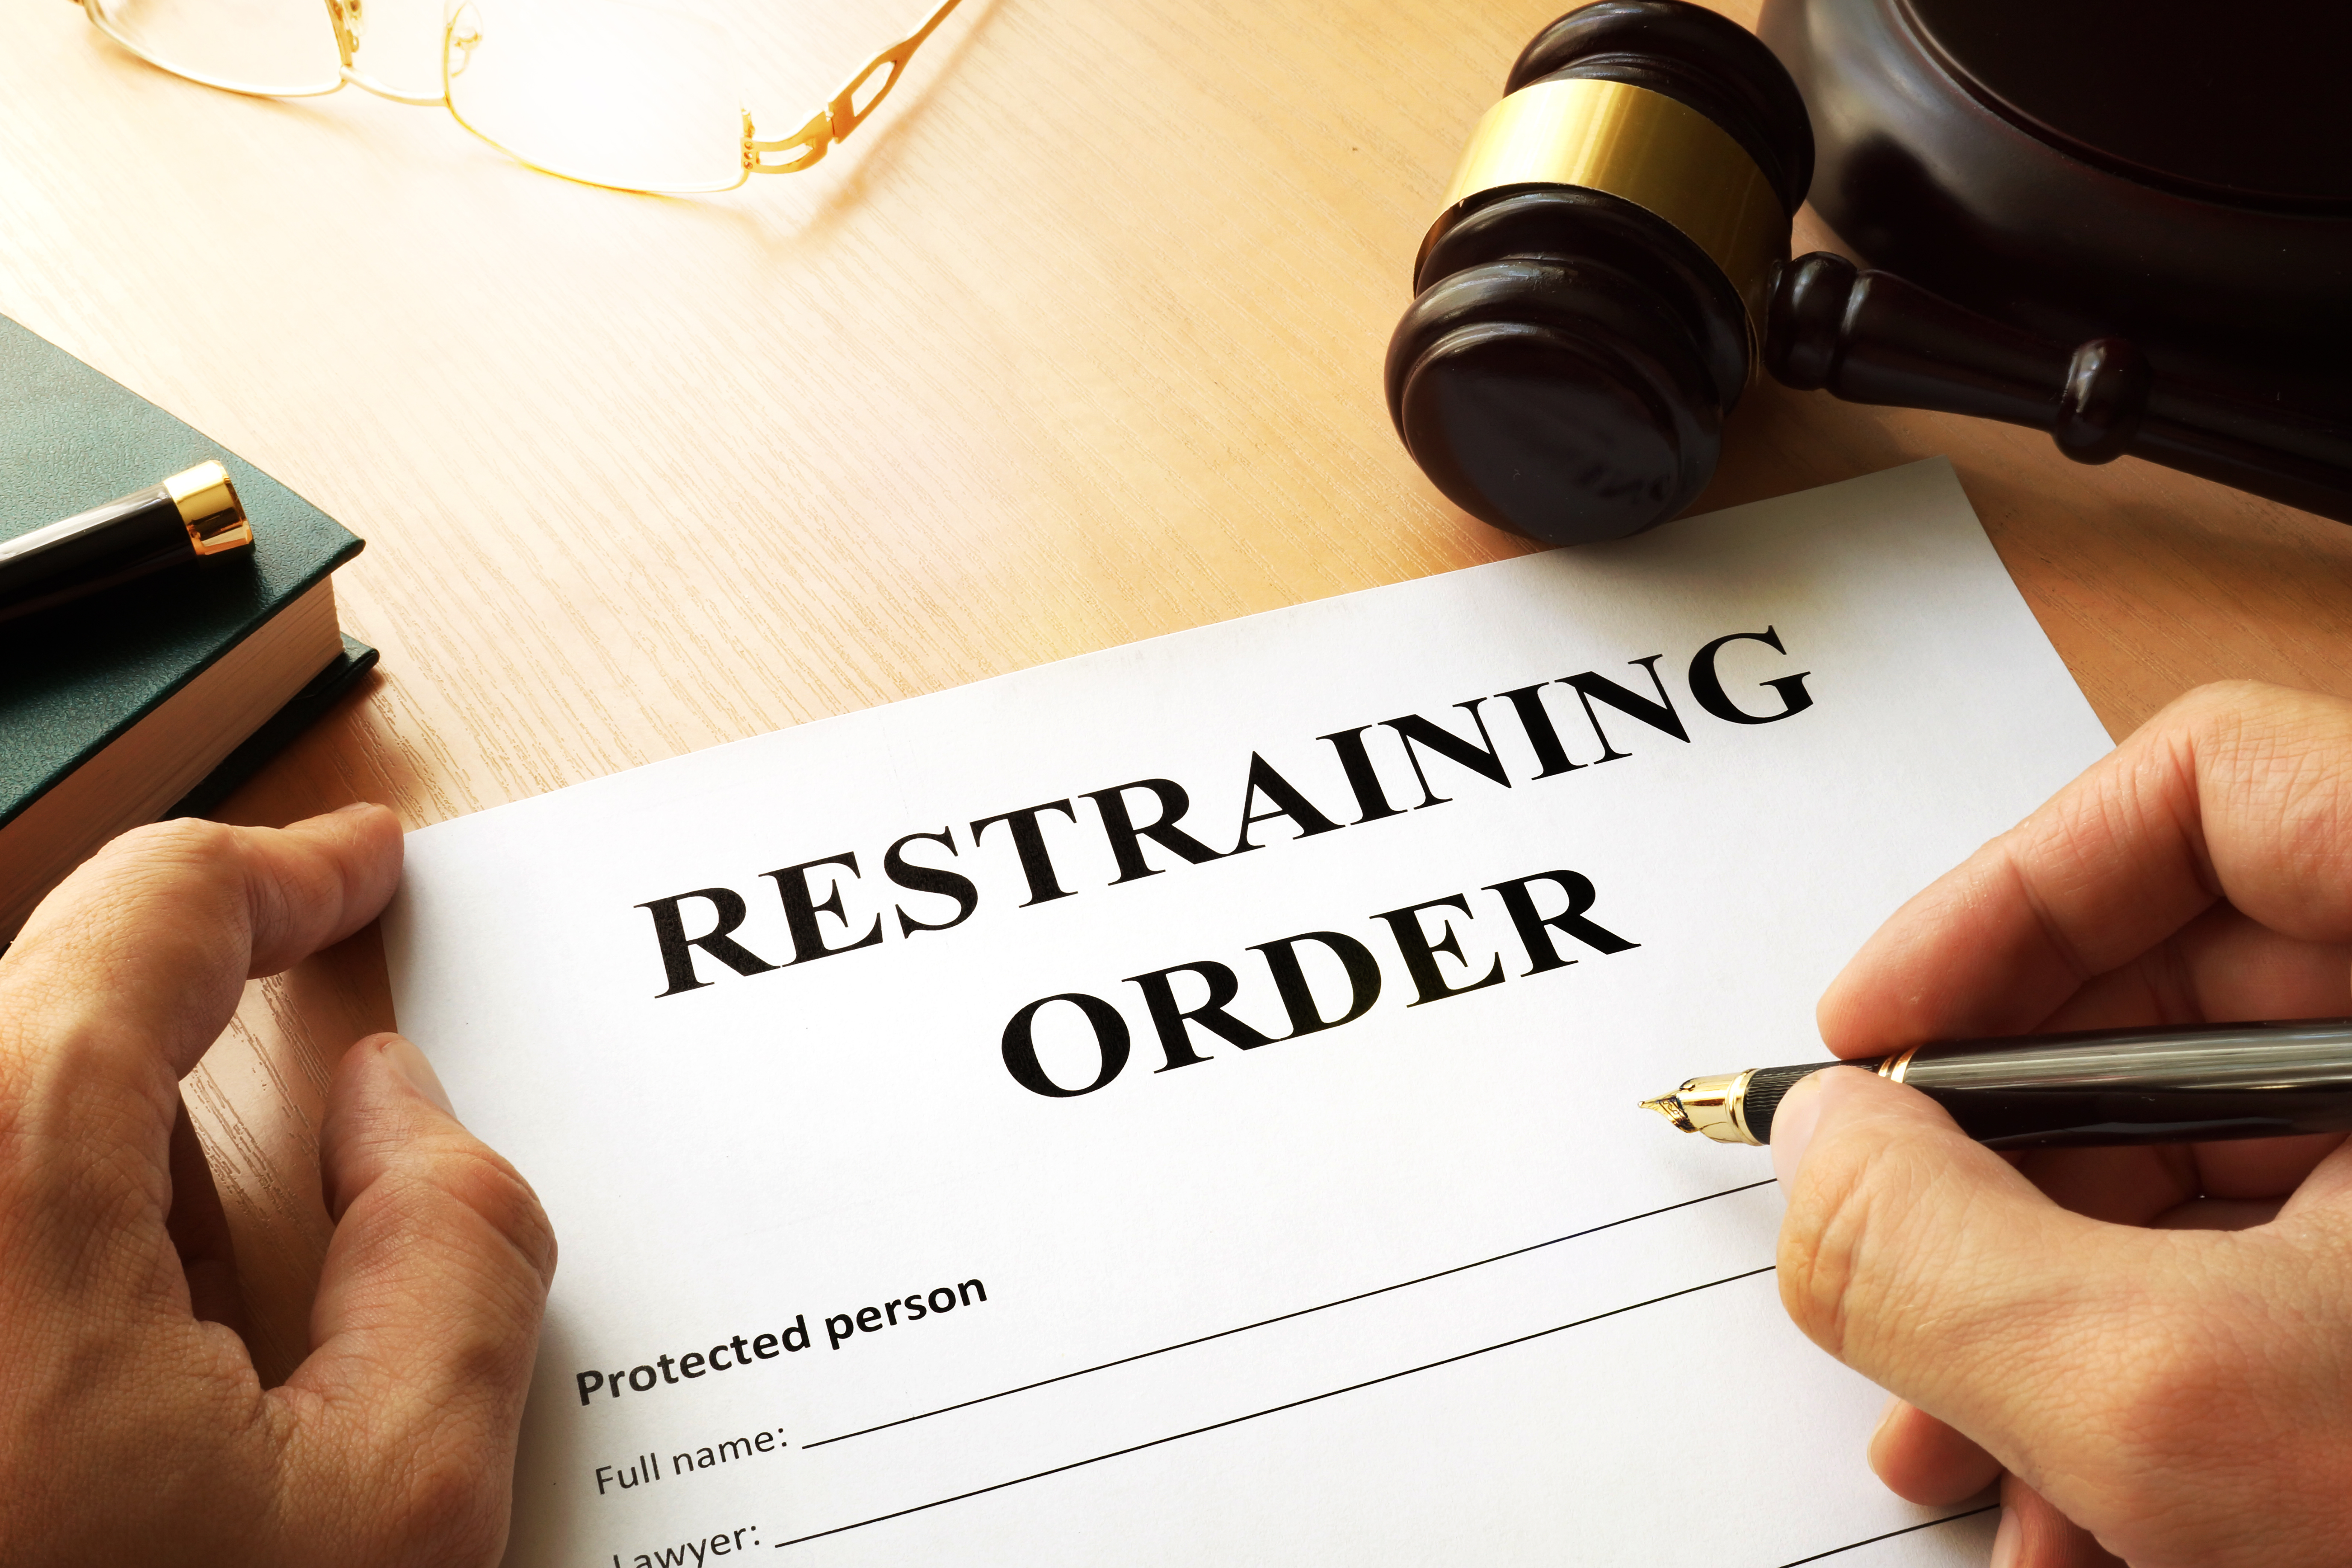 Une personne remplissant une ordonnance restrictive | Source : Getty Images